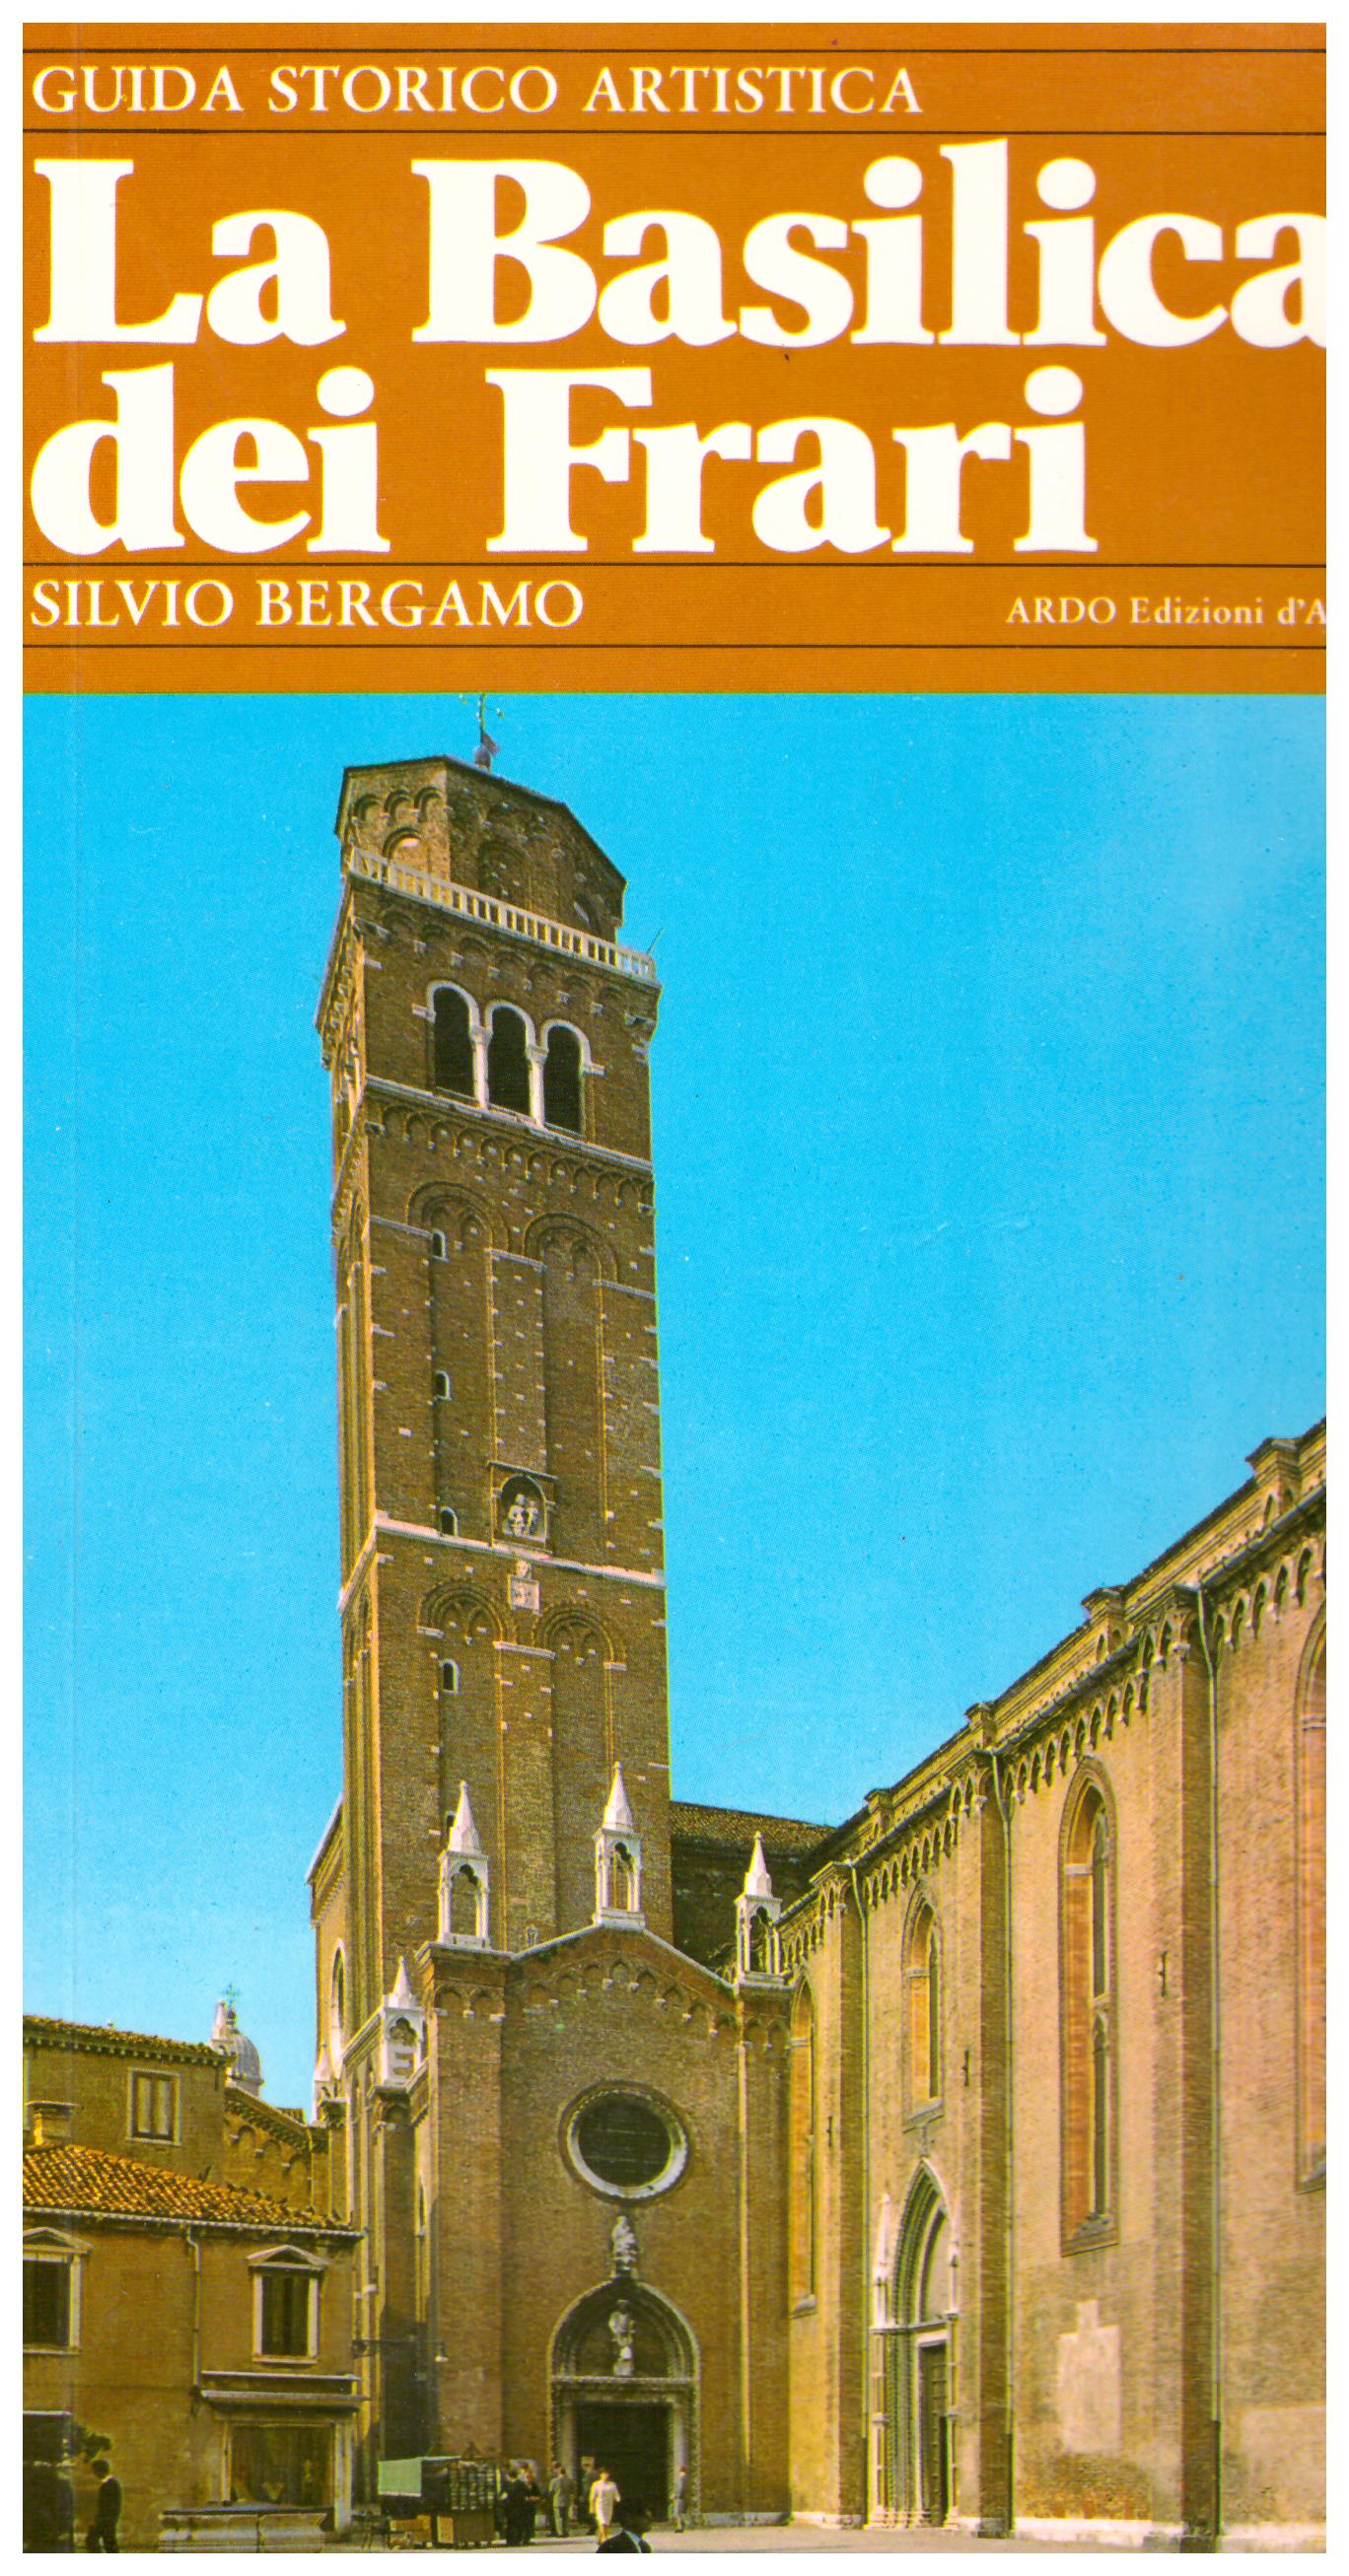 Titolo: La basilica dei Frari Autore : AA.VV. Editore: ARDO edizioni d'arte